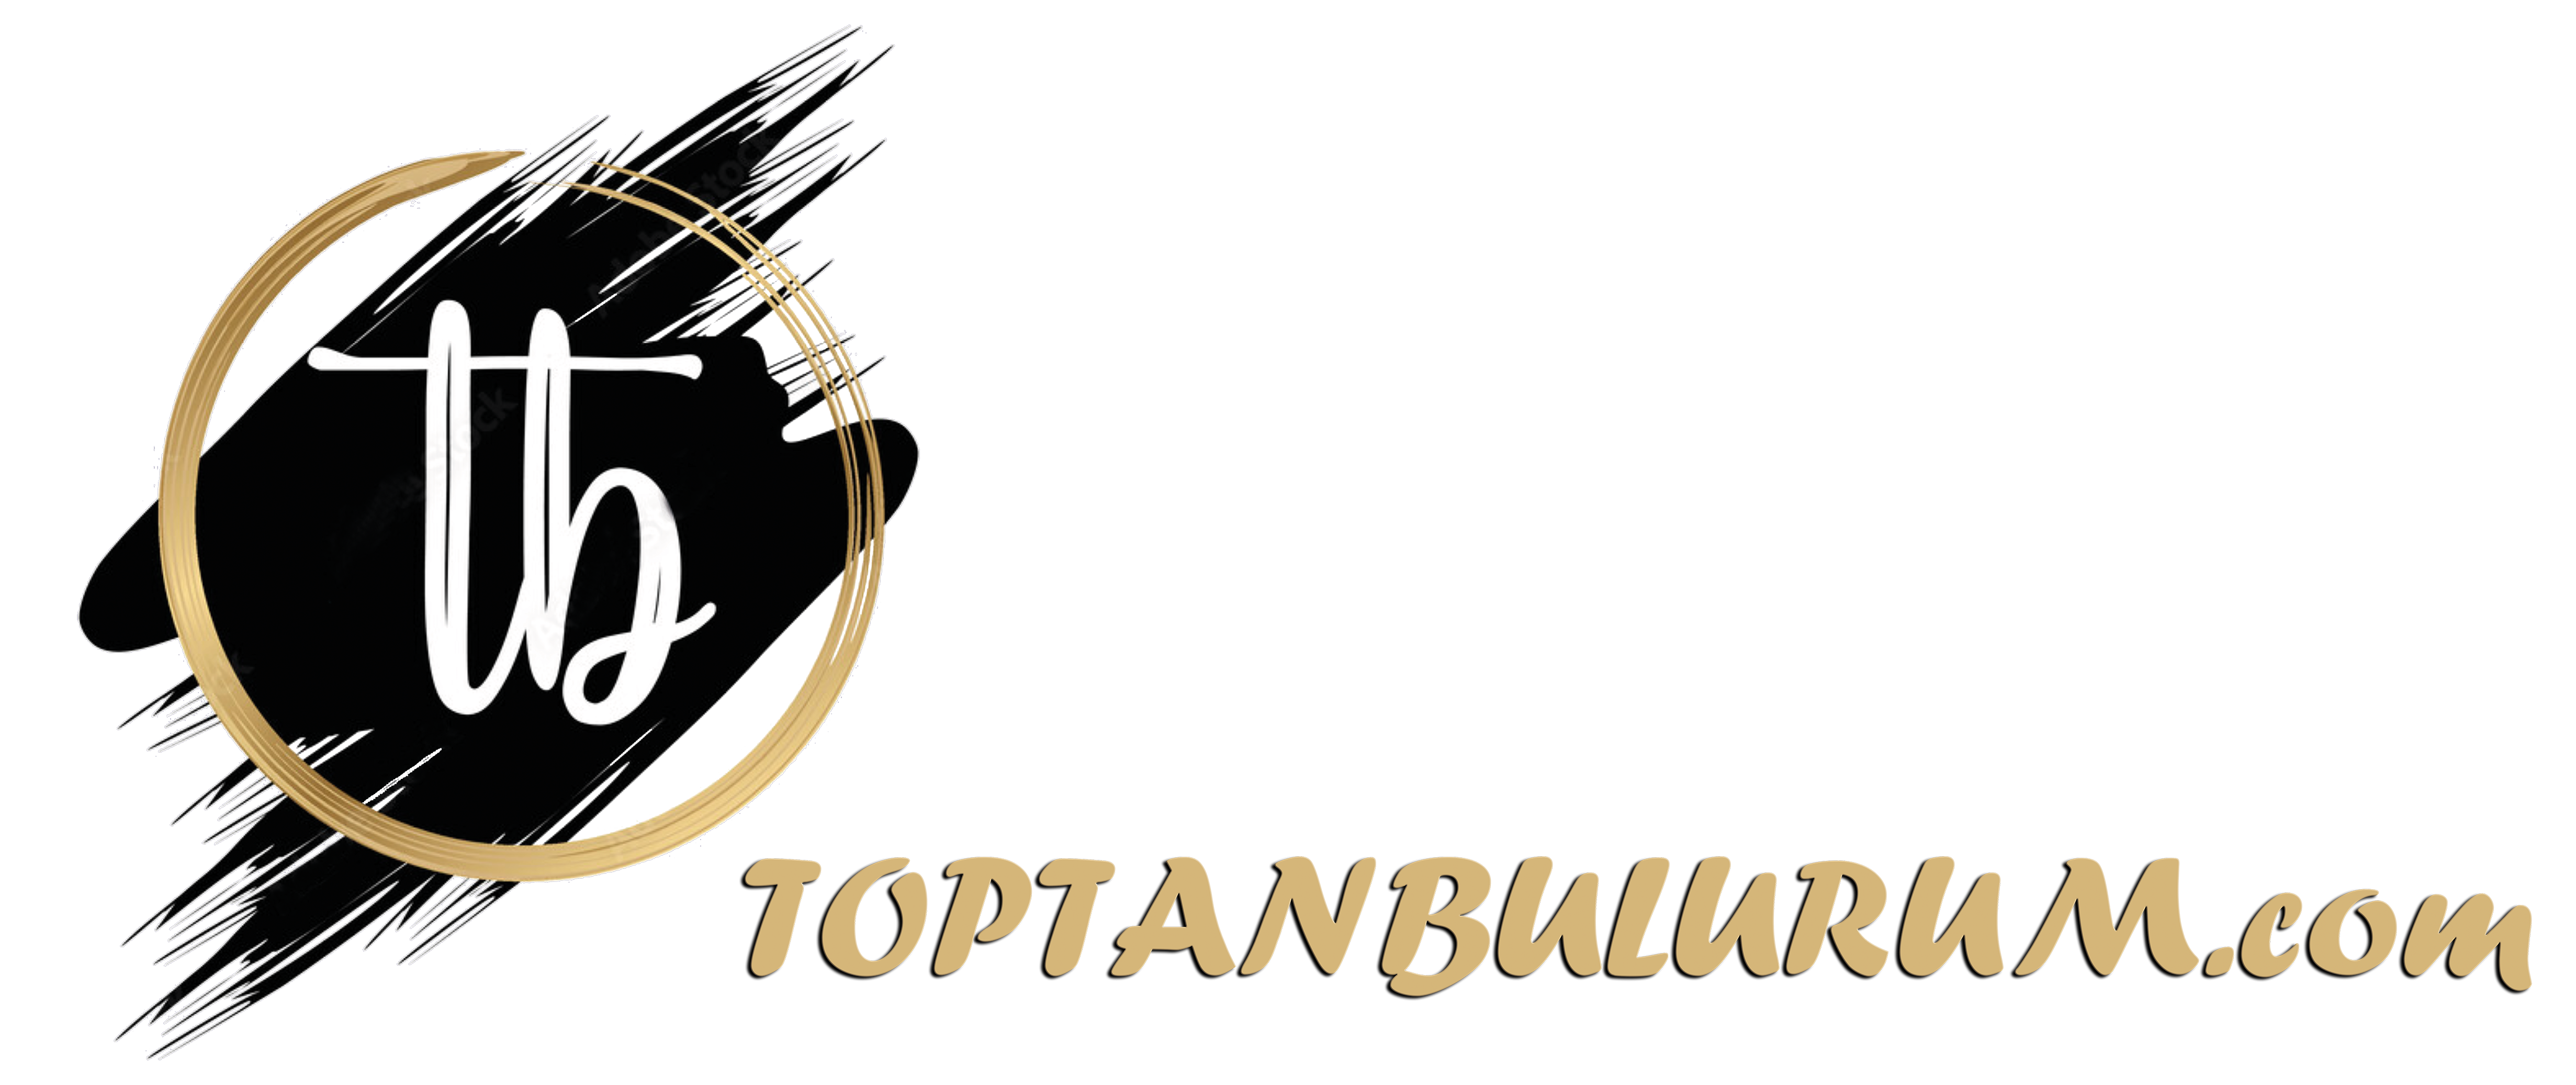 toptanbulurum.com-logo